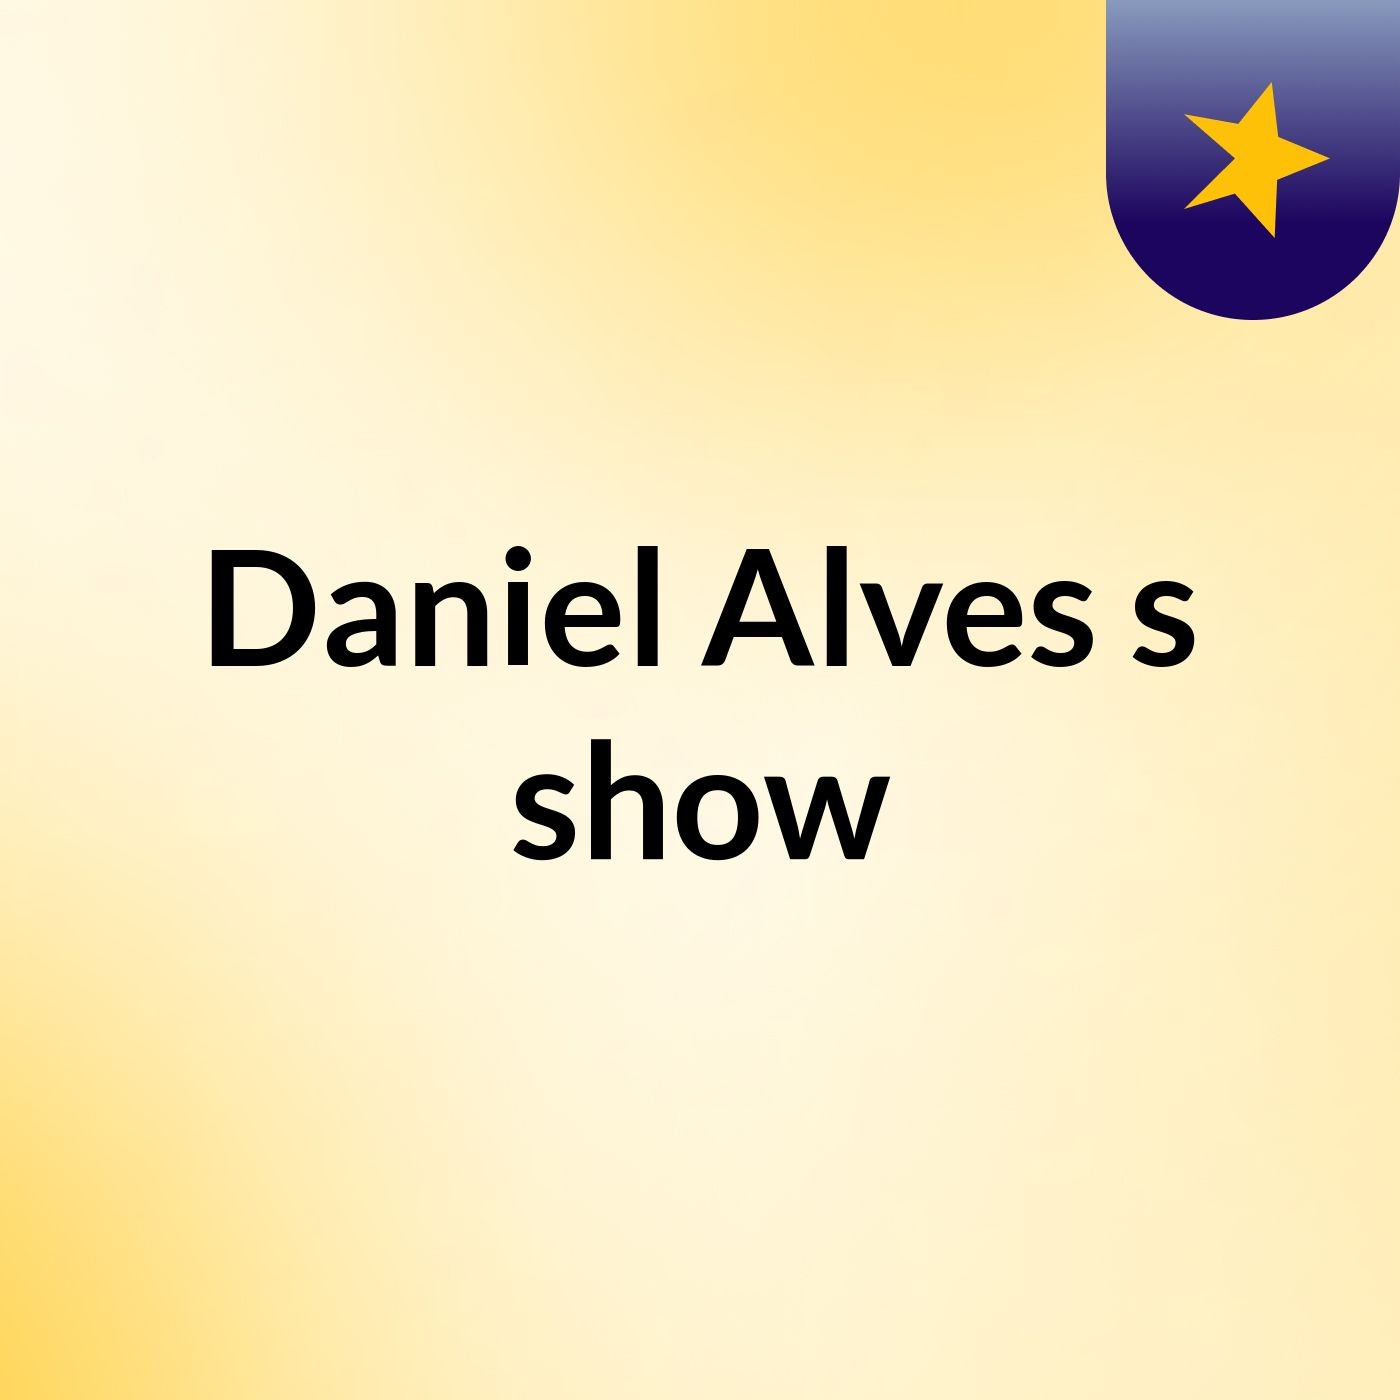 Daniel Alves's show